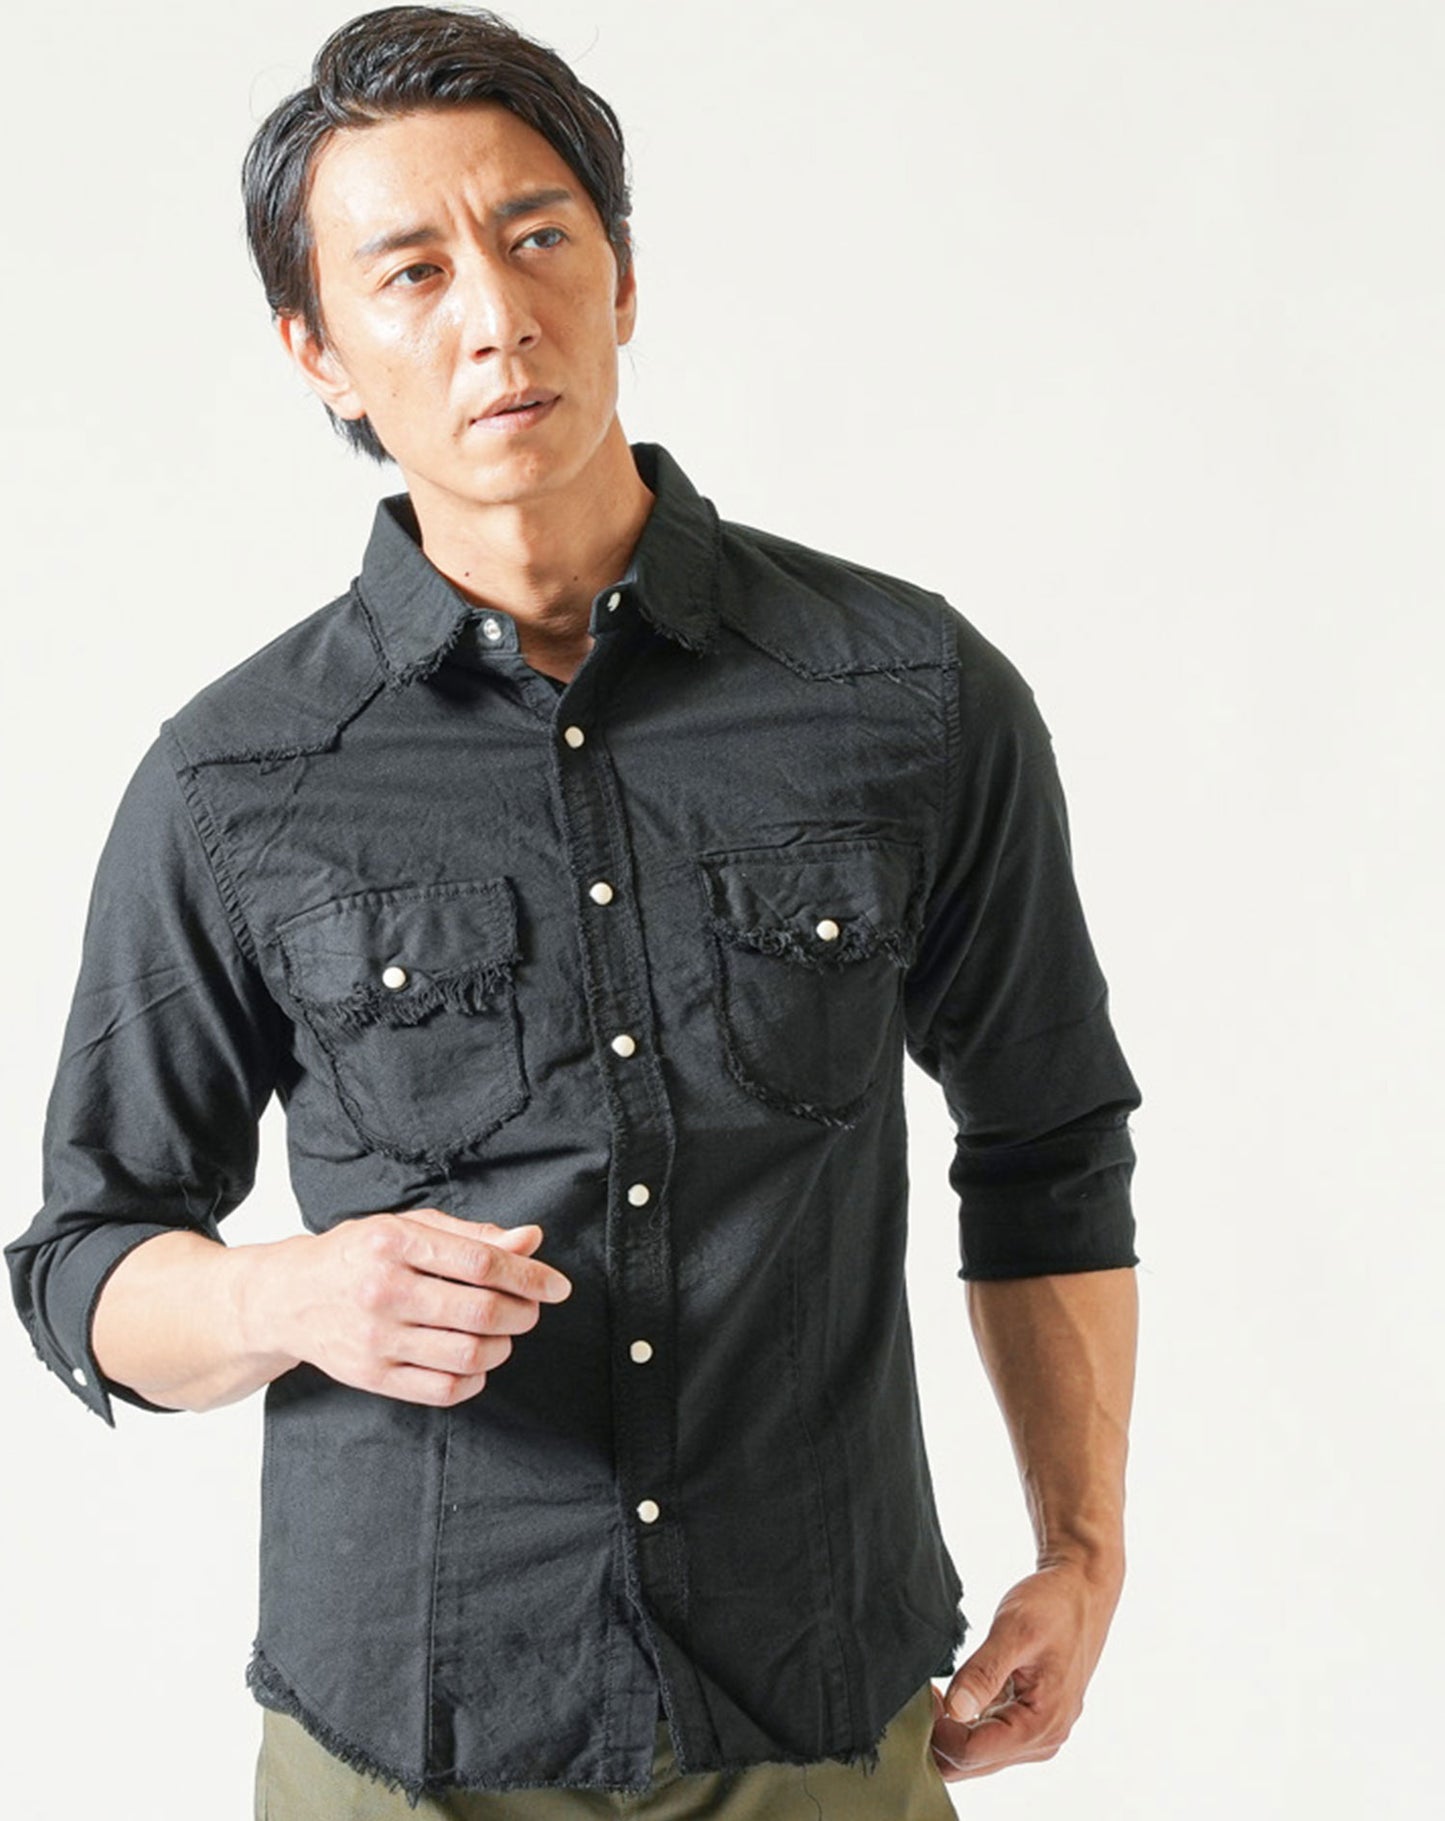 バイカーファッション・ちょいワルメンズ3点コーデセット 黒7分袖シャツ×黒半袖Tシャツ×カーキブーツカットチノパン